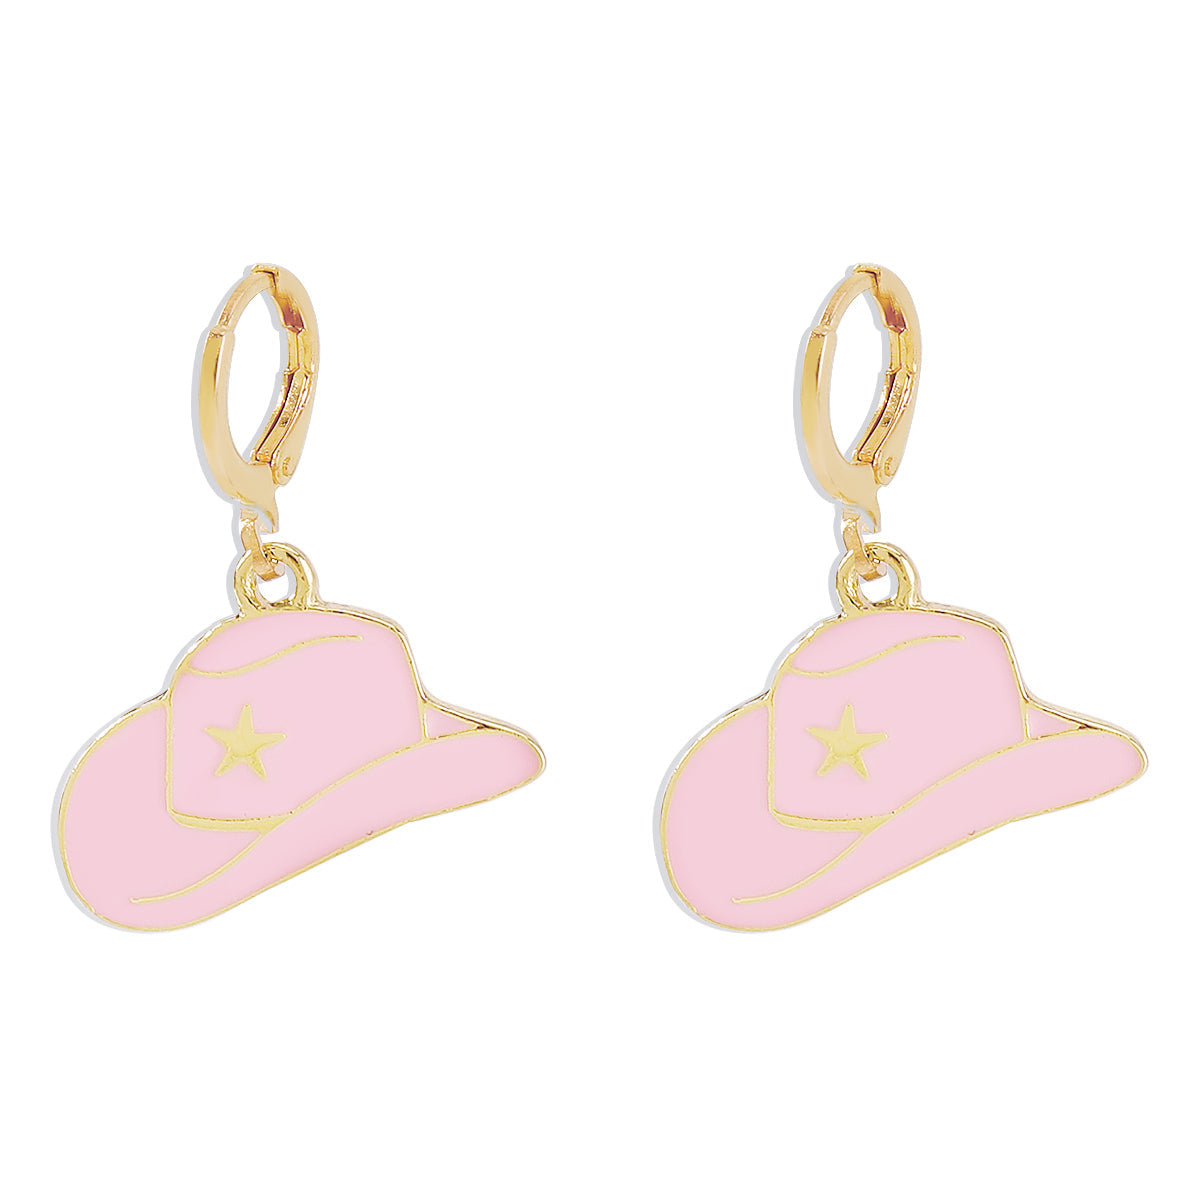 Pink Enamel & 18K Gold-Plated Cowboy Hat Huggie Earrings